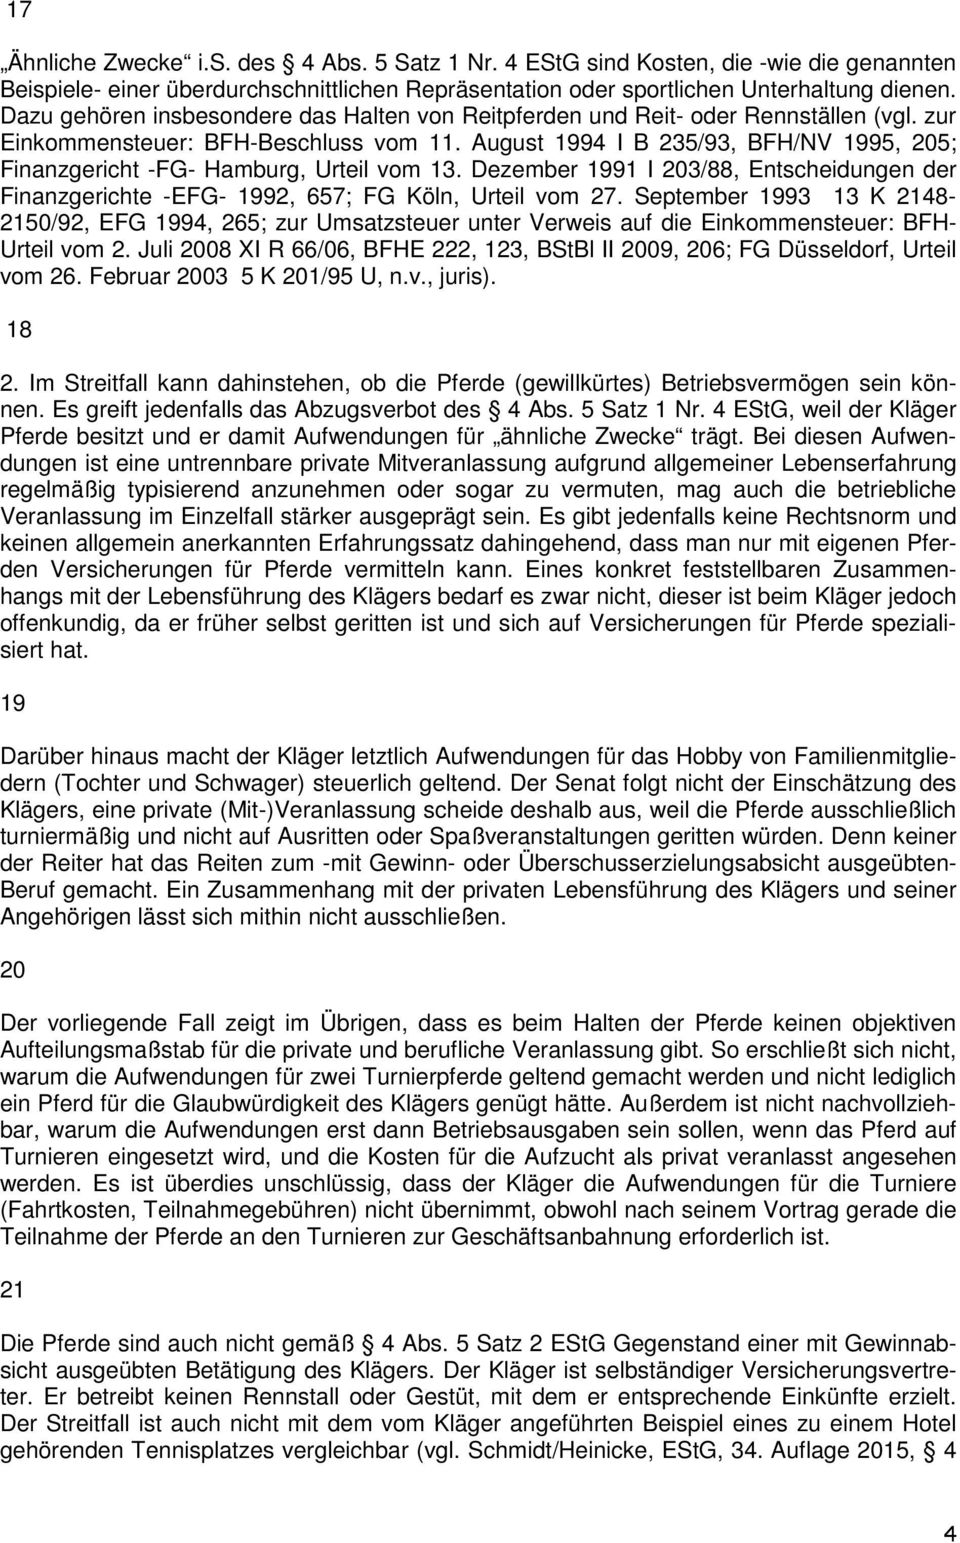 August 1994 I B 235/93, BFH/NV 1995, 205; Finanzgericht -FG- Hamburg, Urteil vom 13. Dezember 1991 I 203/88, Entscheidungen der Finanzgerichte -EFG- 1992, 657; FG Köln, Urteil vom 27.